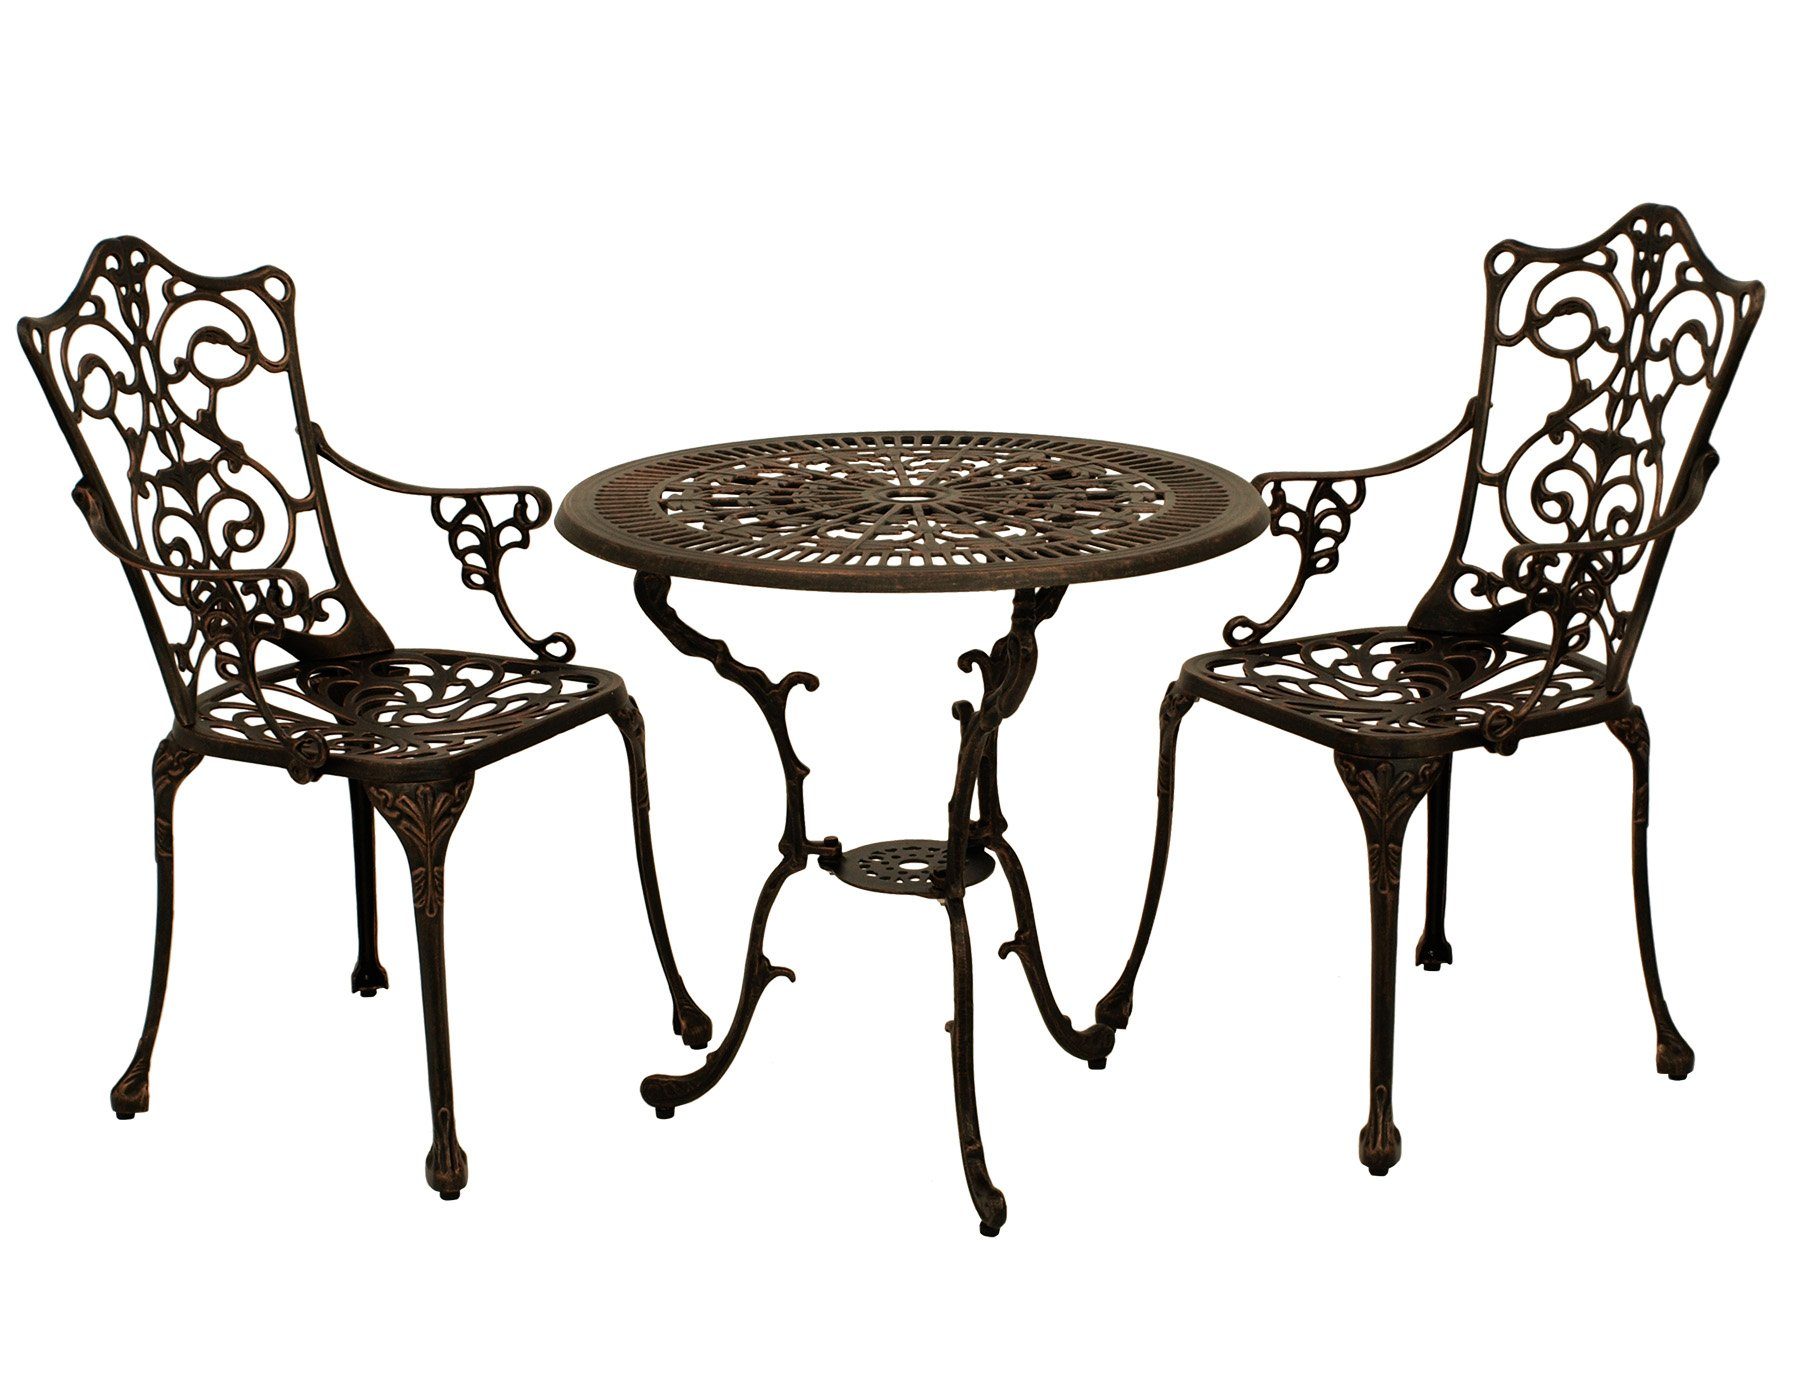 DEGAMO Garten-Essgruppe Jugendstil, (3-tlg), (2x Sessel, 1x Tisch 70cm rund),  Aluguss rostfrei, Farbe bronze-antik